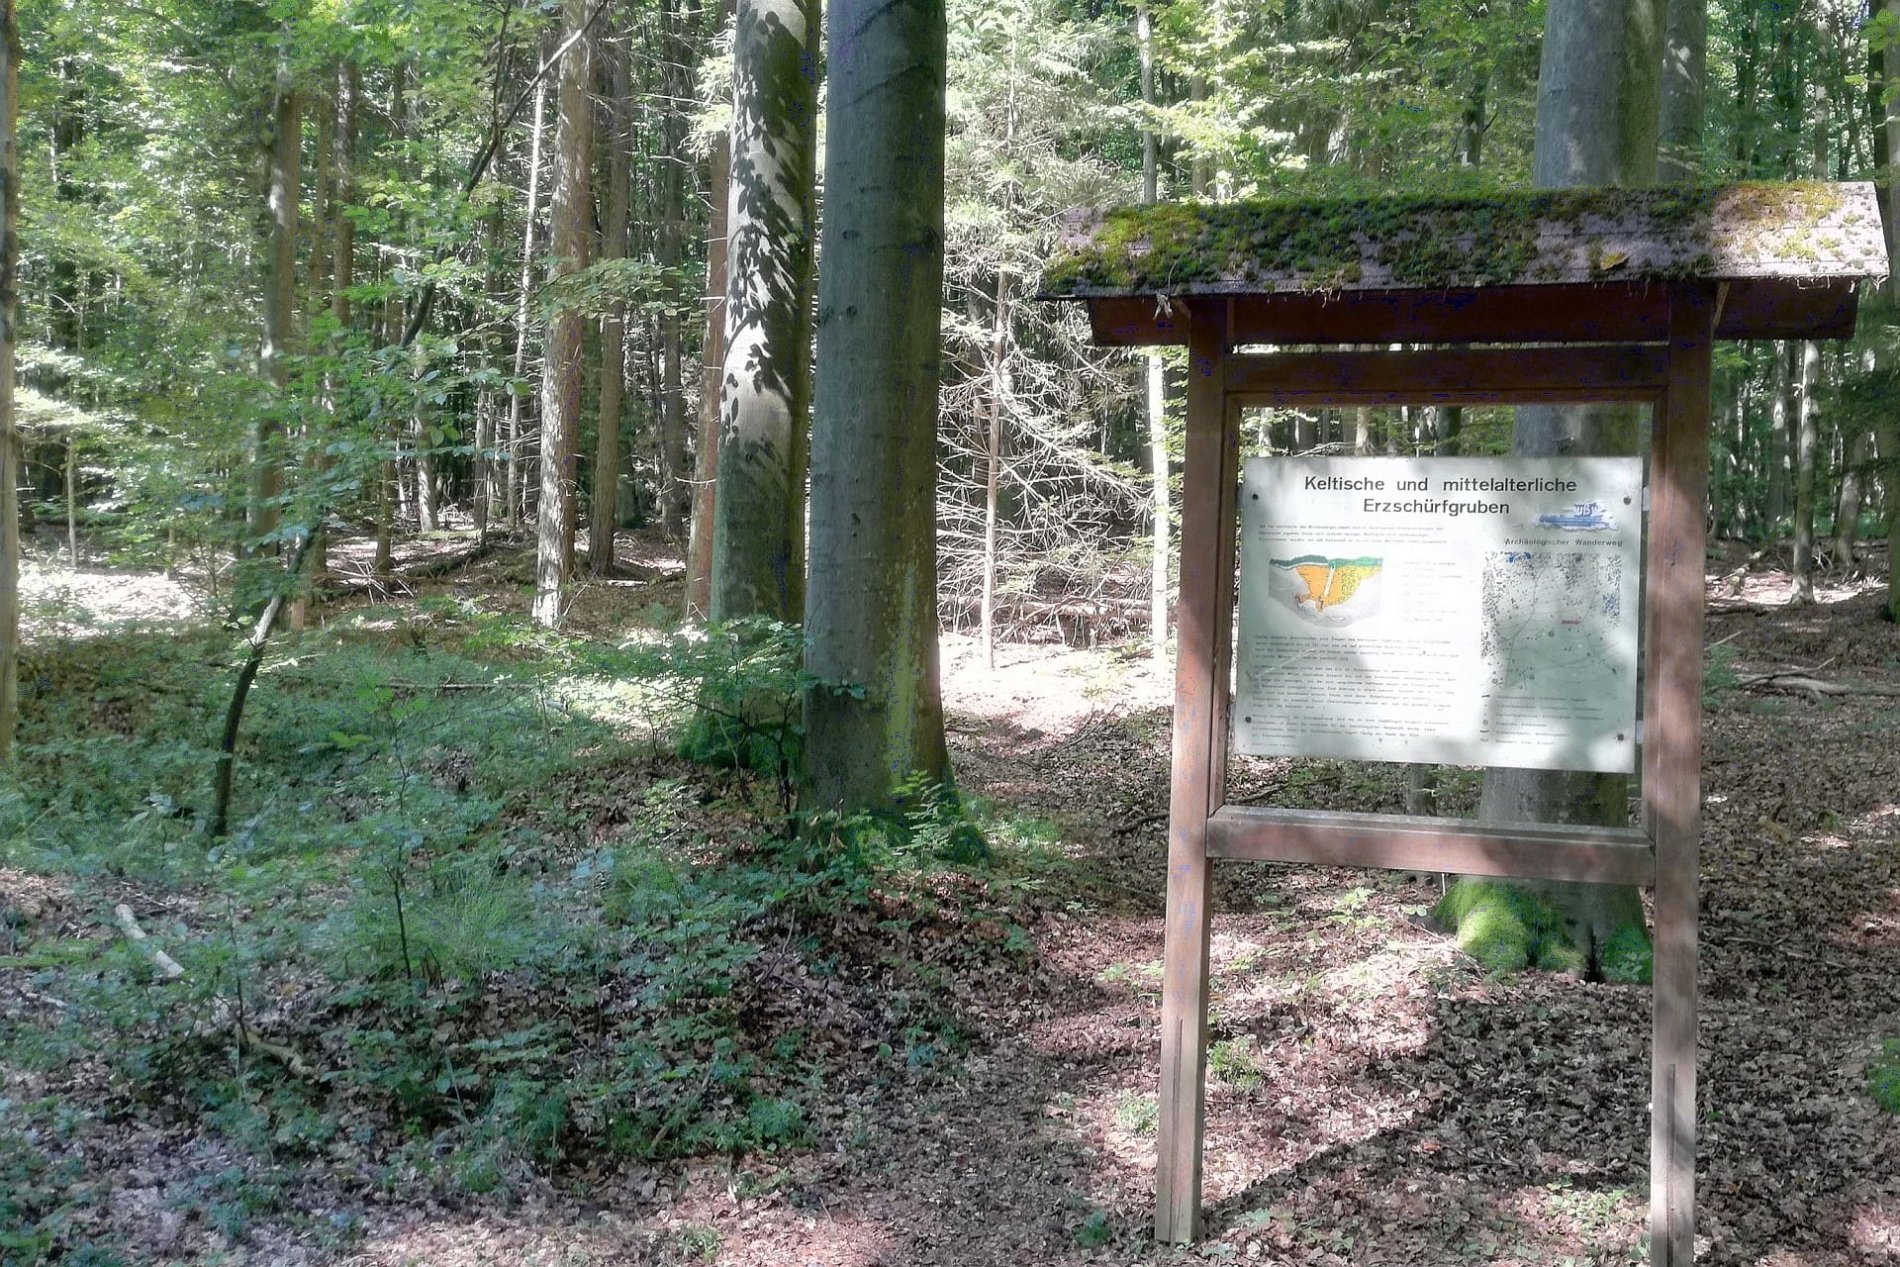 Keltische und mittelalterliche Erzschürfgruben im Naturschutzgebiet Weltenburger Enge auf dem Michelsberg in Kelheim